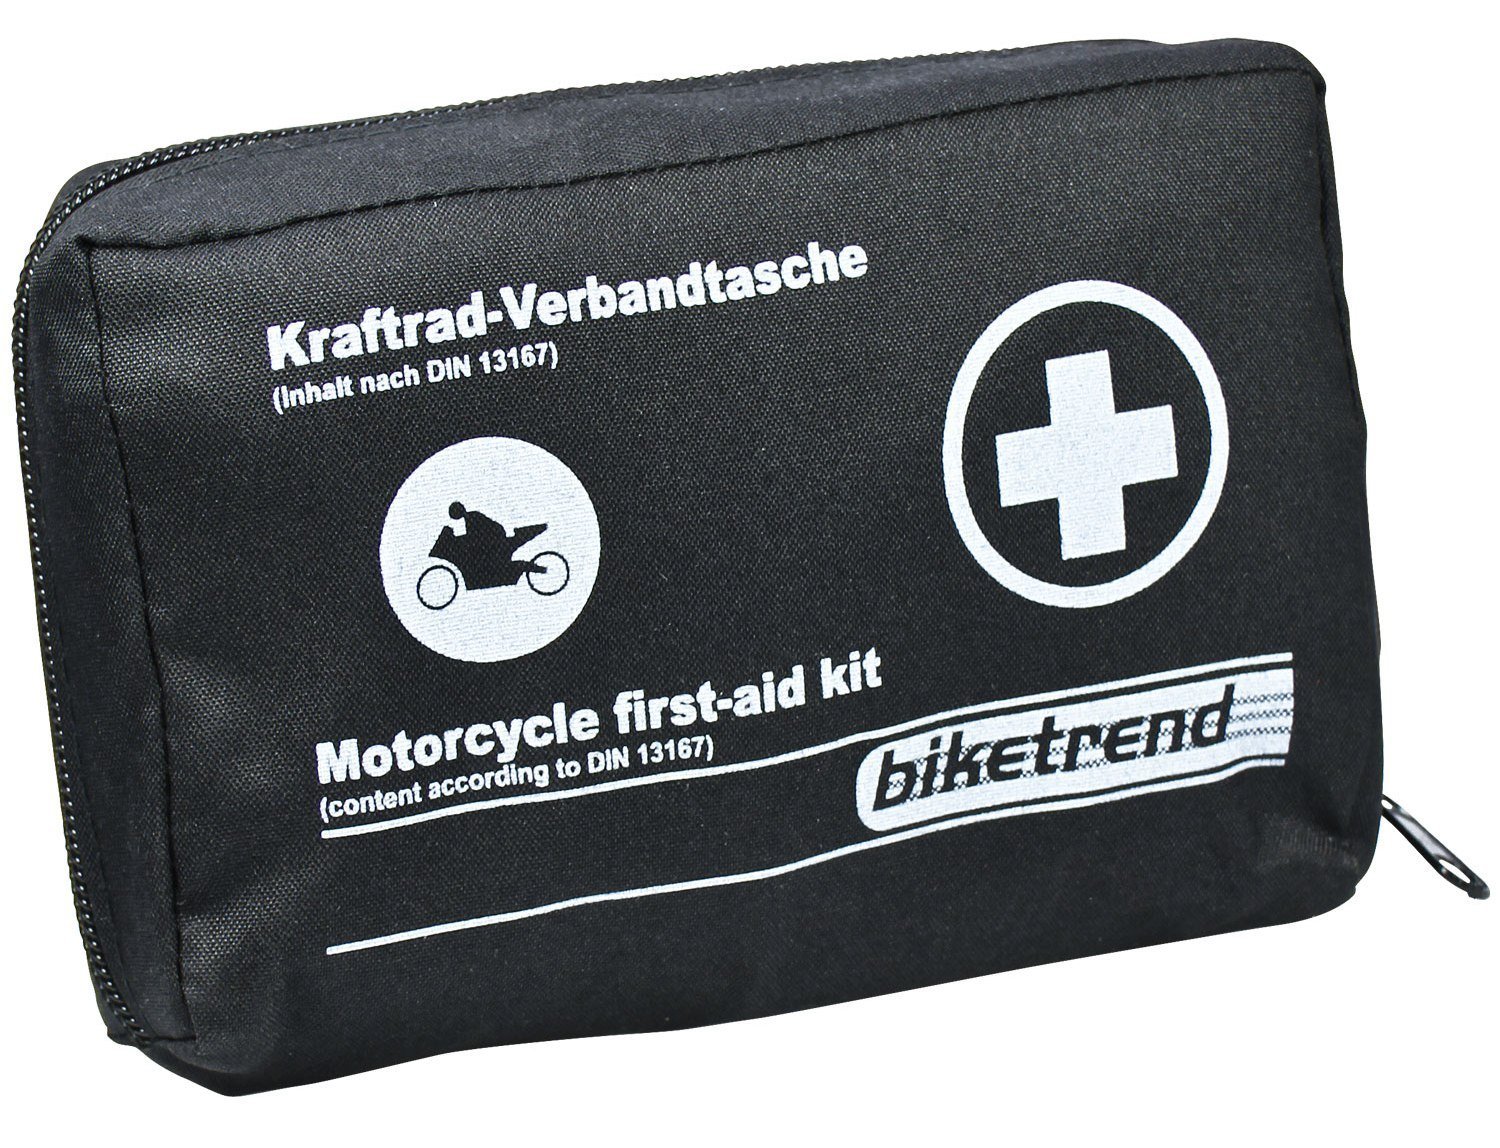 Cartrend Kraftrad Motorrad Verbandtasche nach DIN 13167